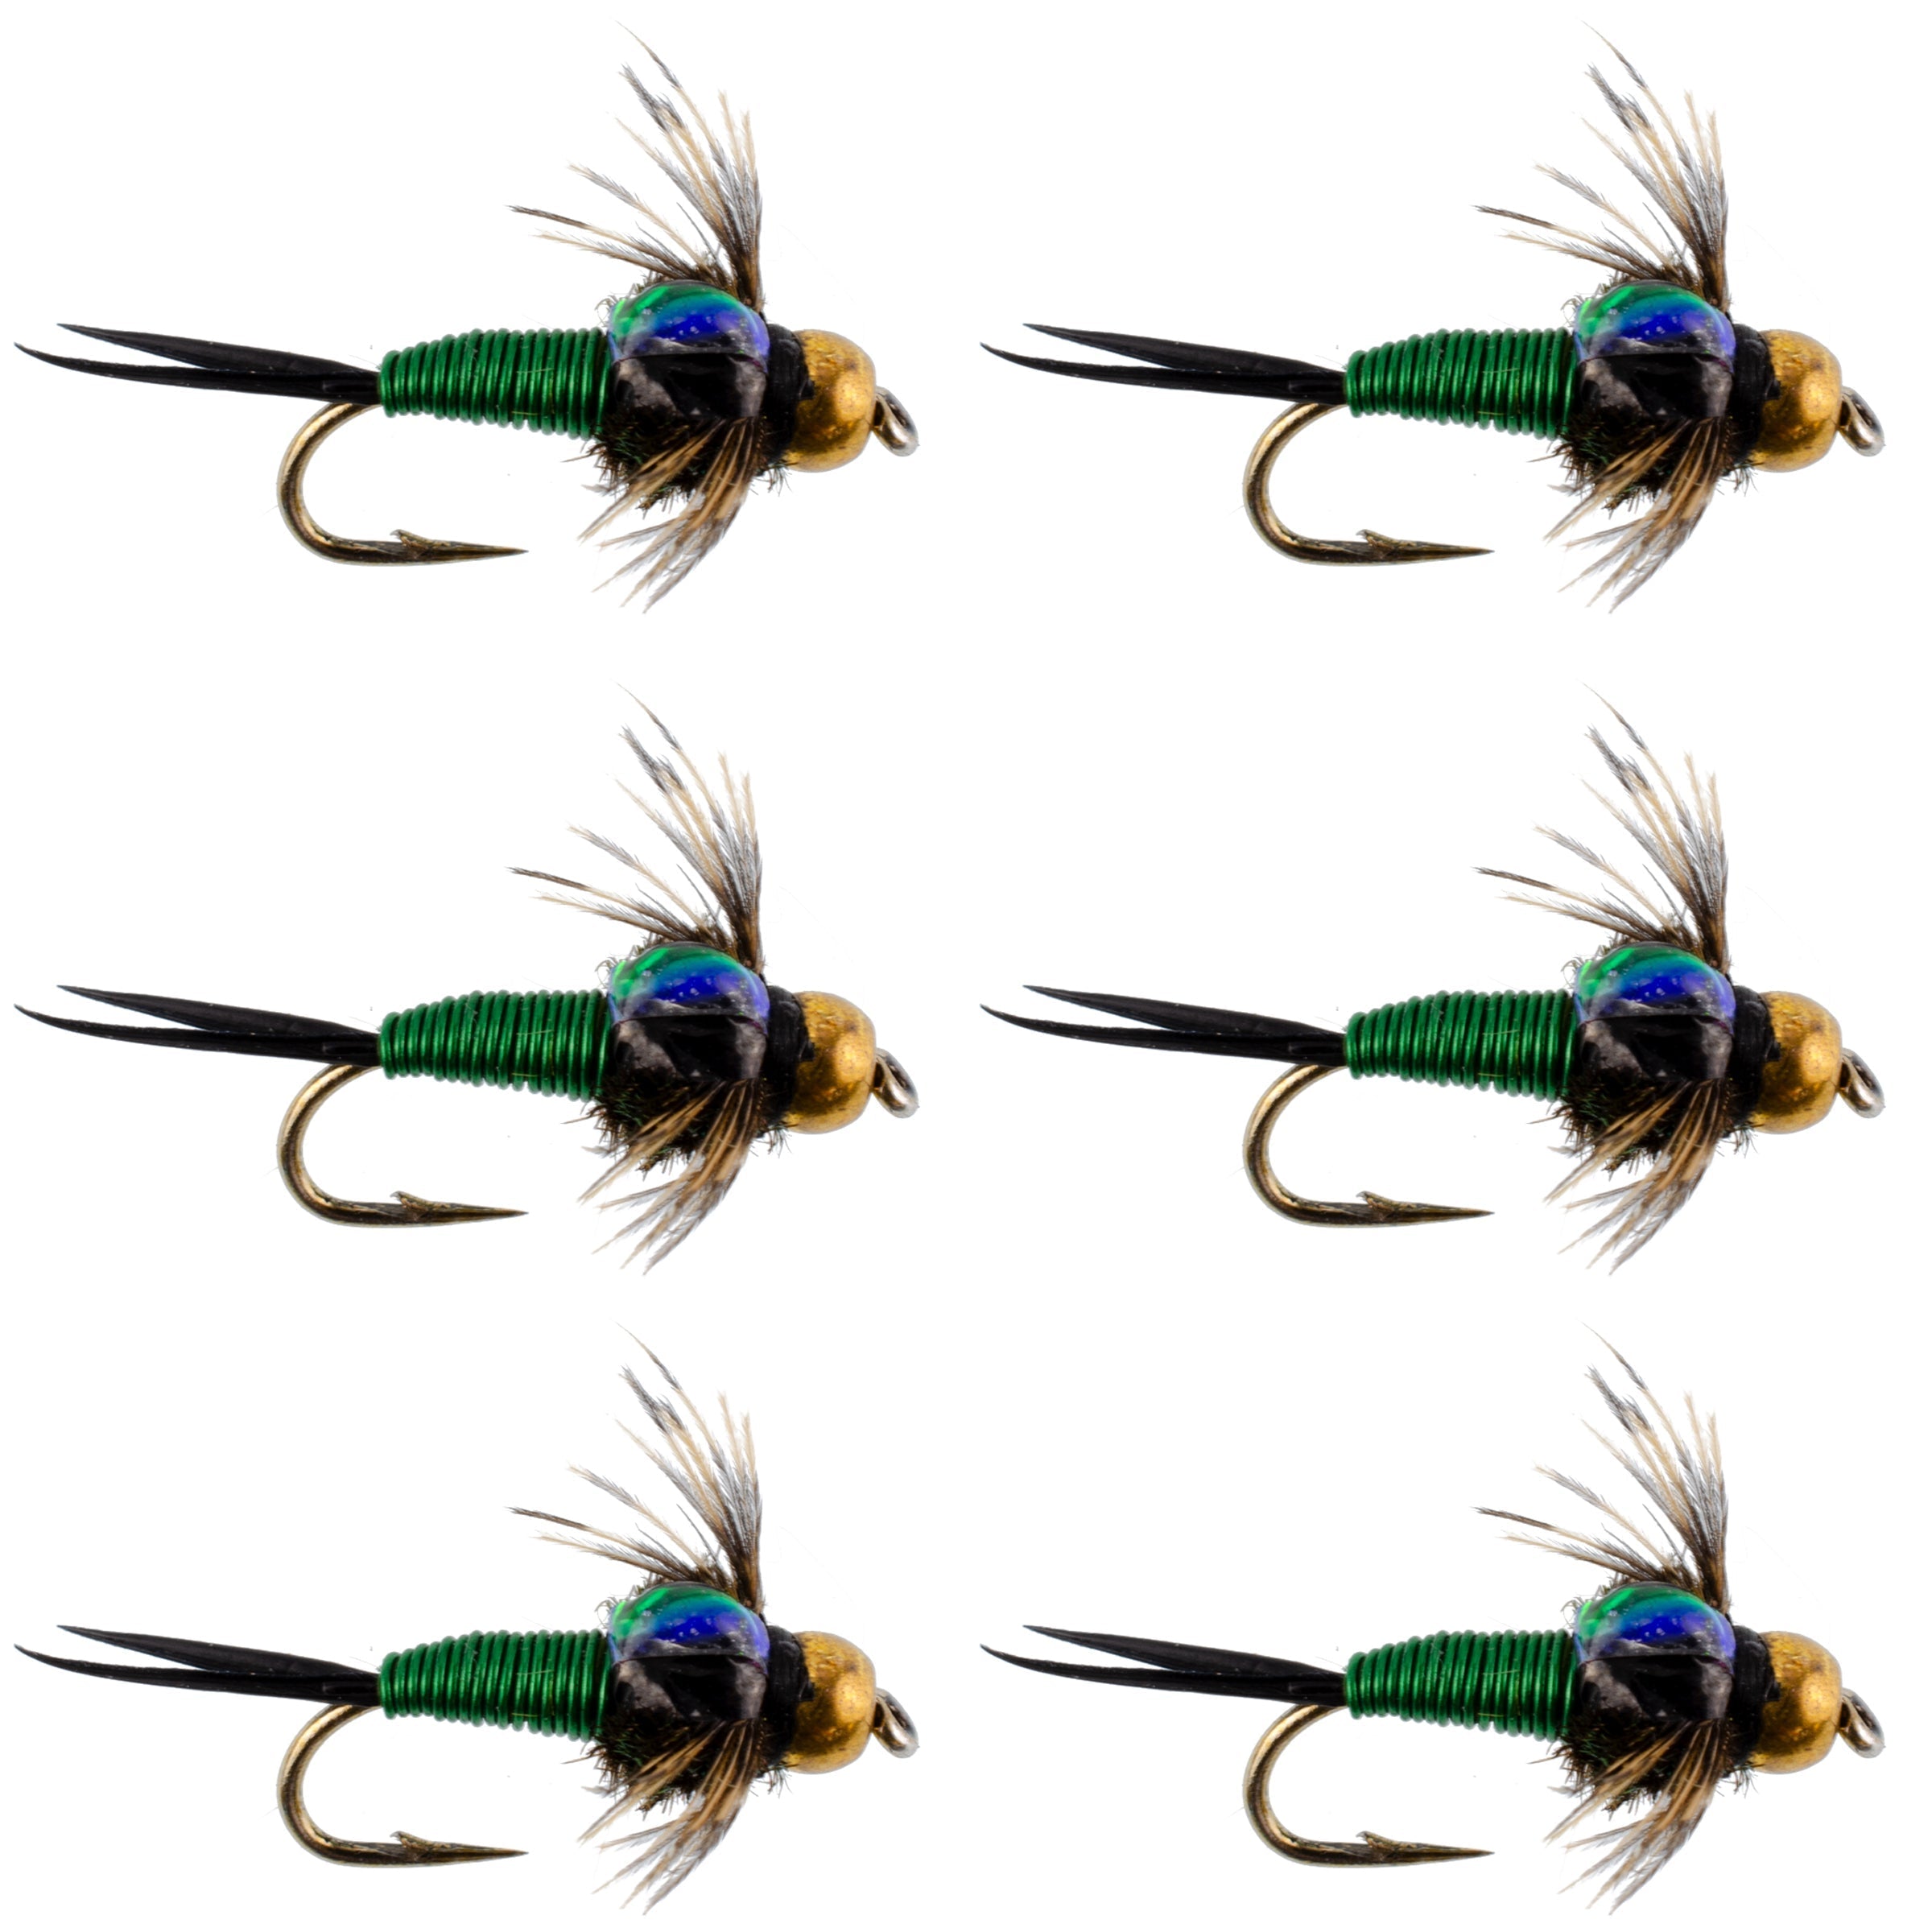 Bead Head Green Copper John Nymph Fly Fishing Flies - Set of 6 Flies Hook Size 18